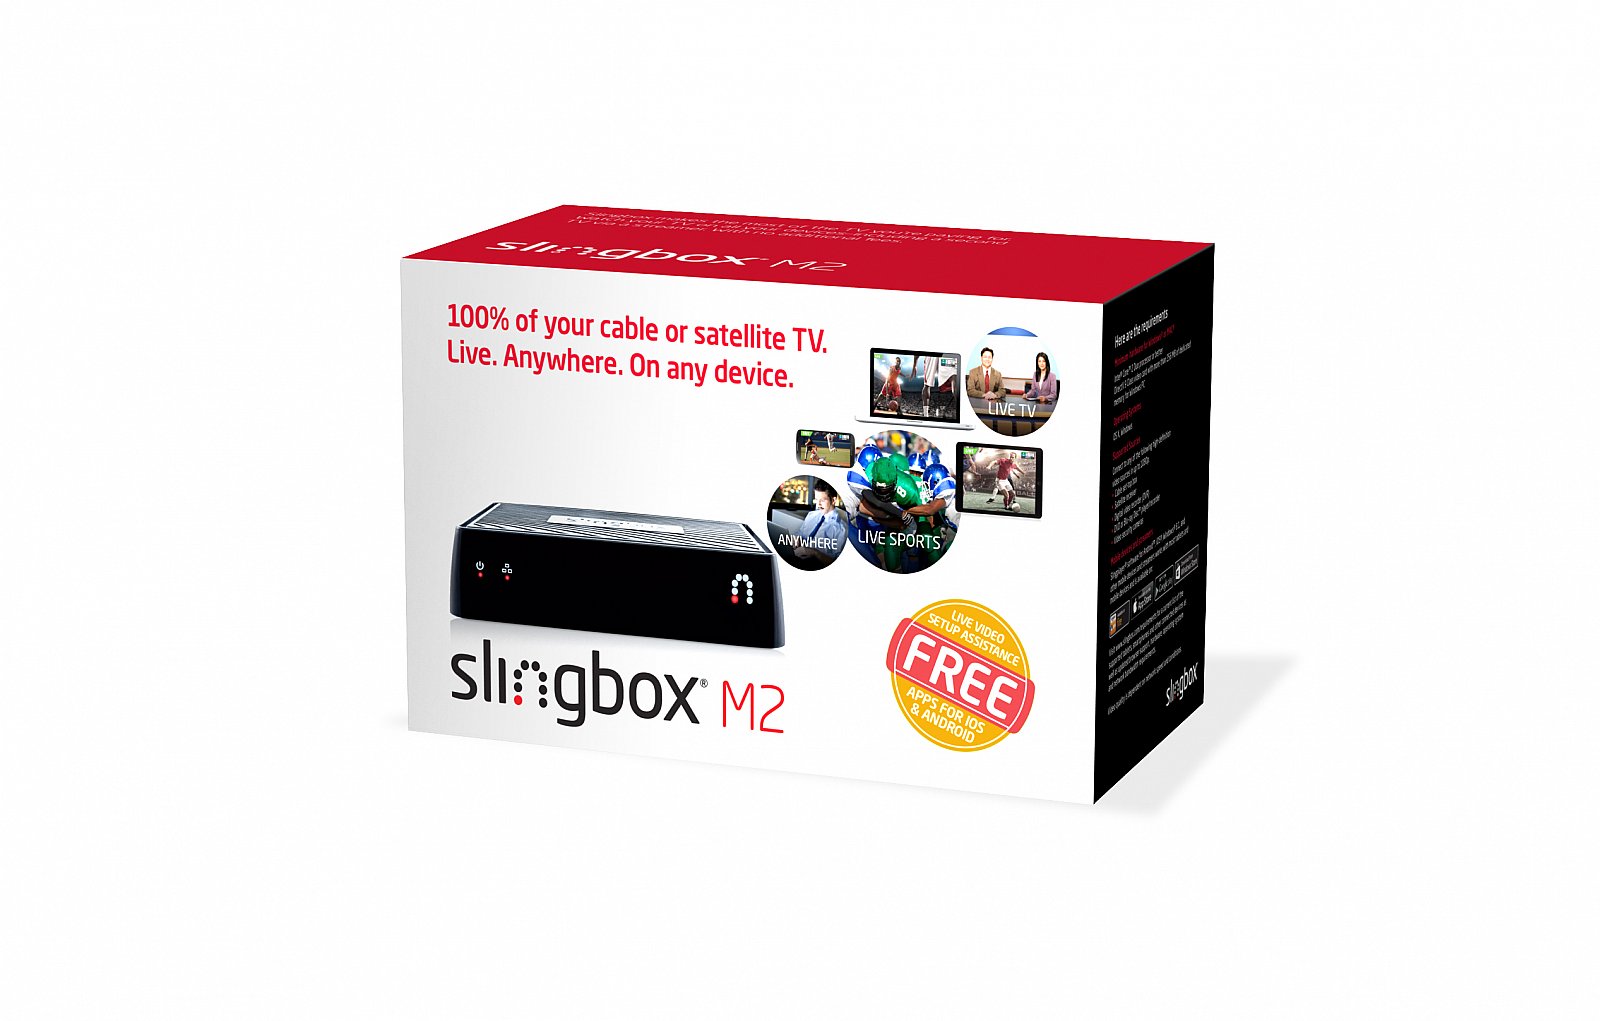 Slingbox M2 2 crédito Sling Media: productos que obtienen una puntuación de regreso a la escuela